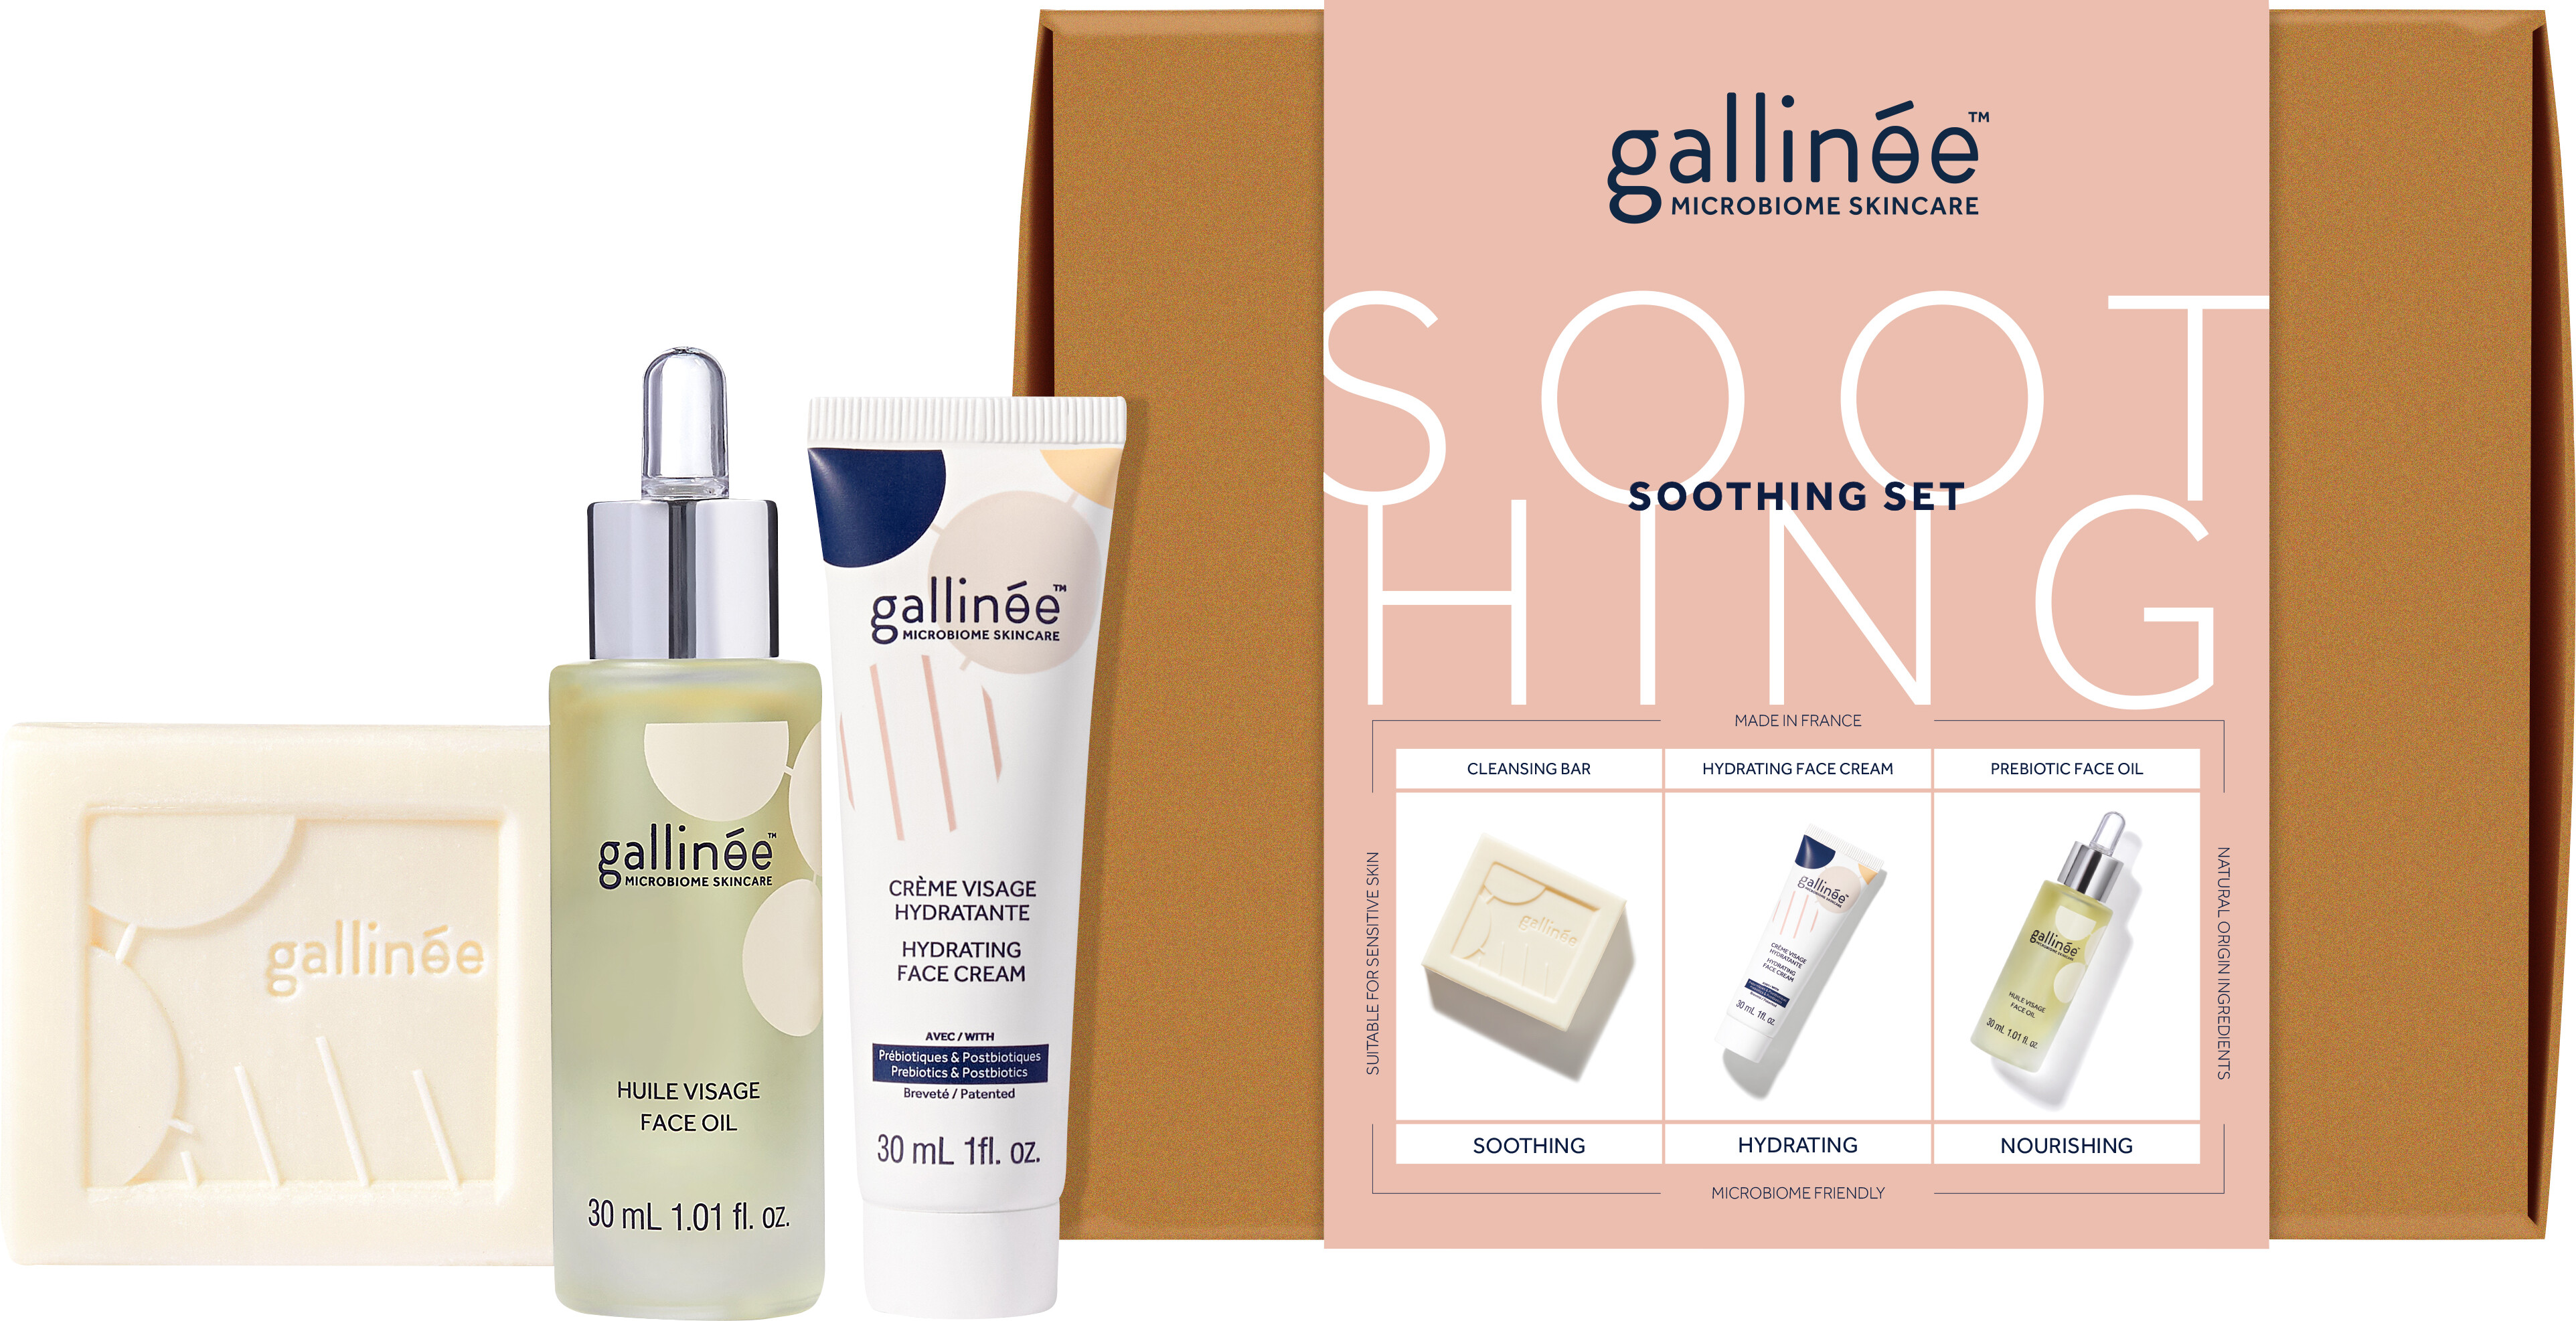 Gallinee Soothing Set